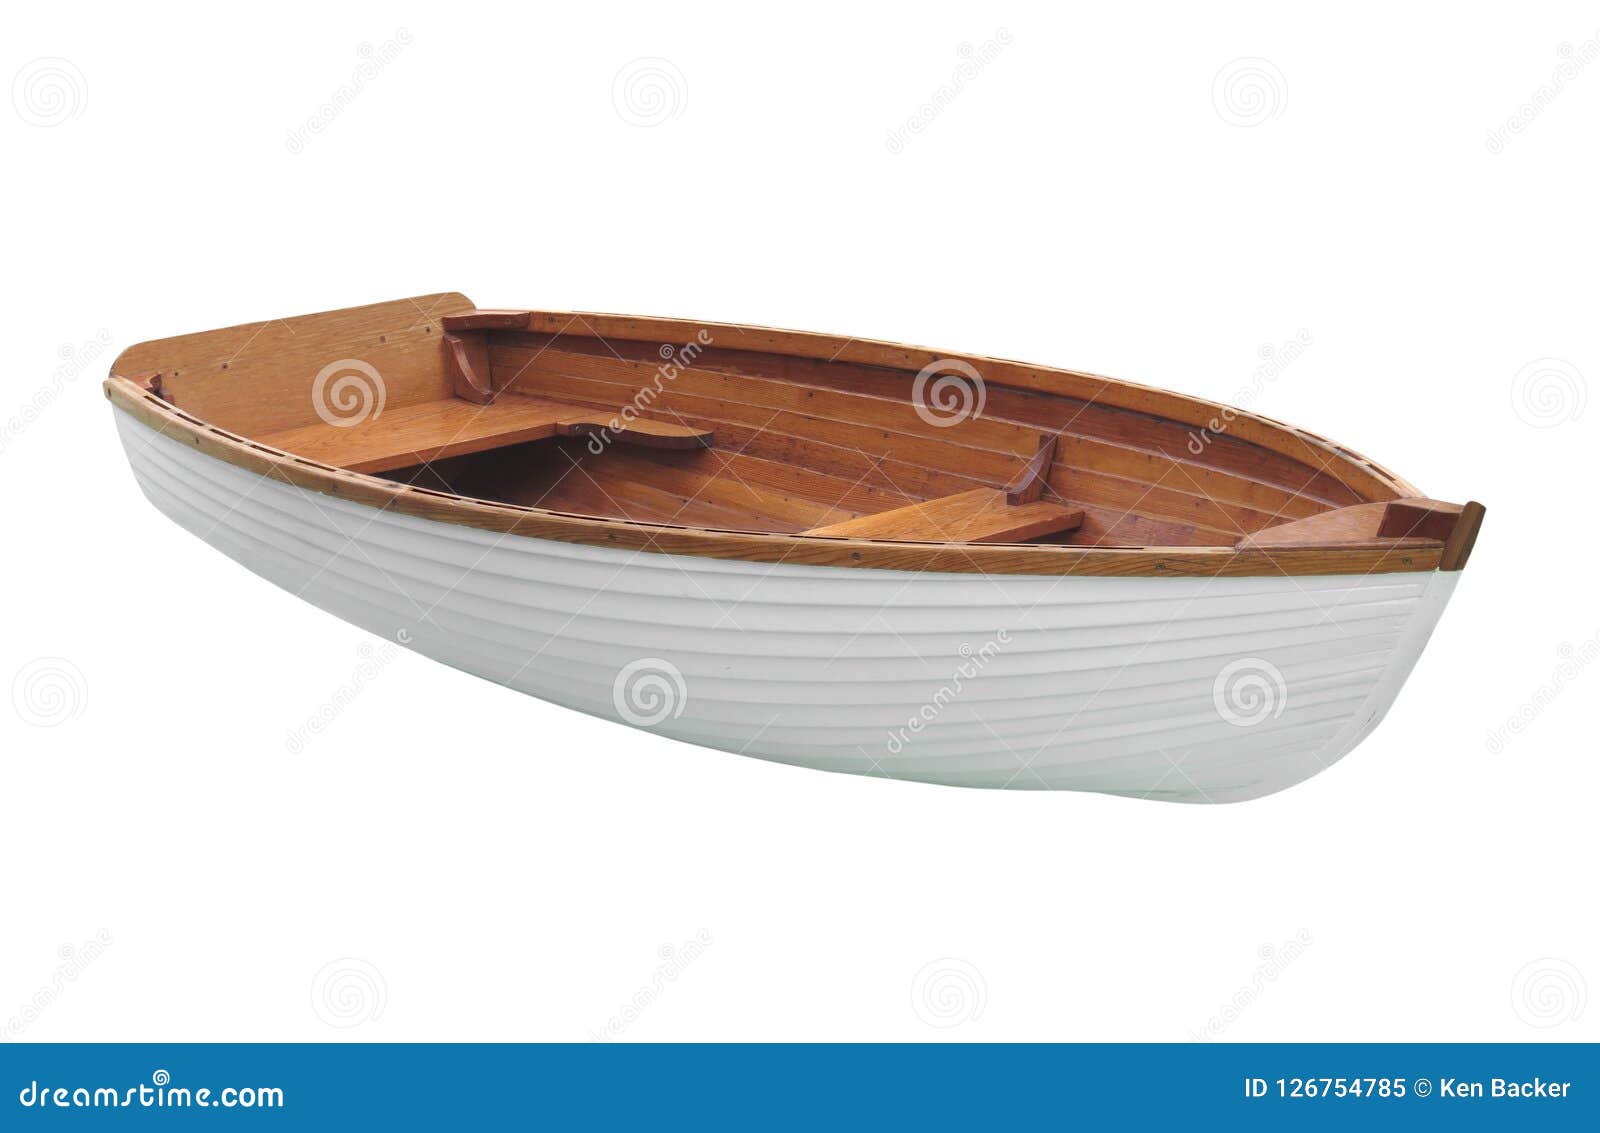 weekend Deskundige naam Kleine houten roeiboot stock afbeelding. Image of roeiboten - 126754785